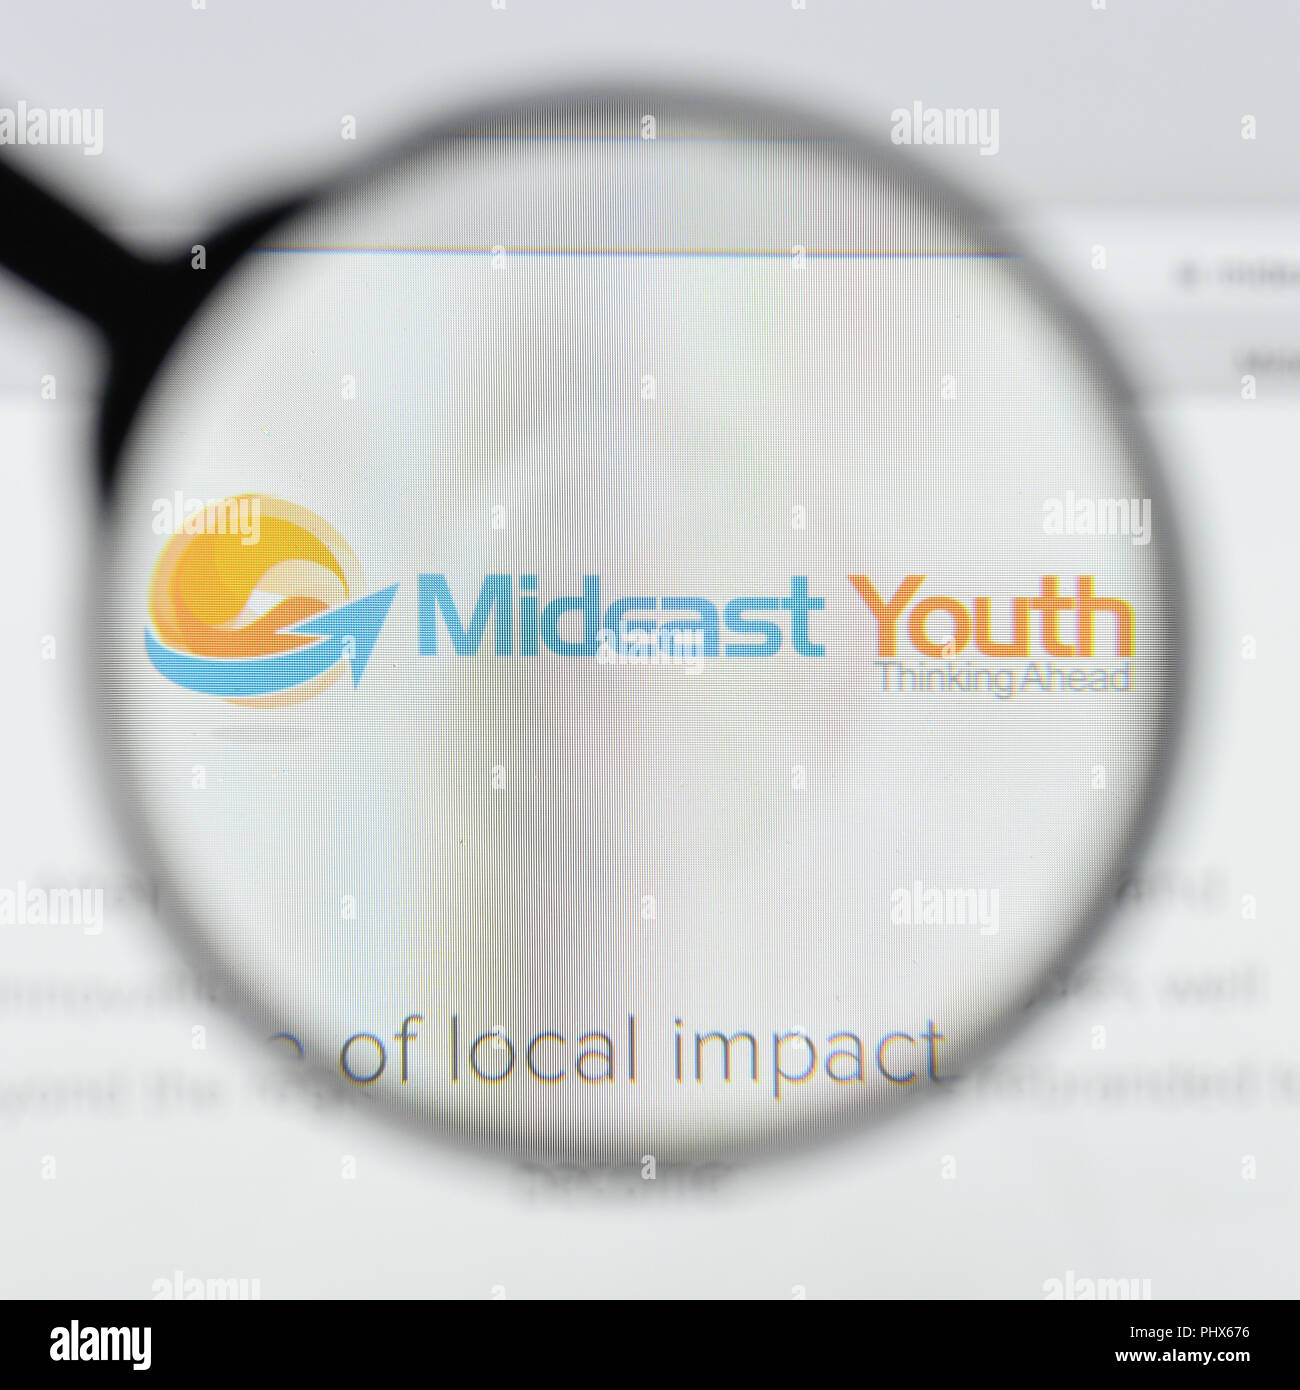 Mailand, Italien - 20 August 2018: Mittlerer Osten Jugend Homepage. Mittlerer Osten Jugend Logo sichtbar. Stockfoto